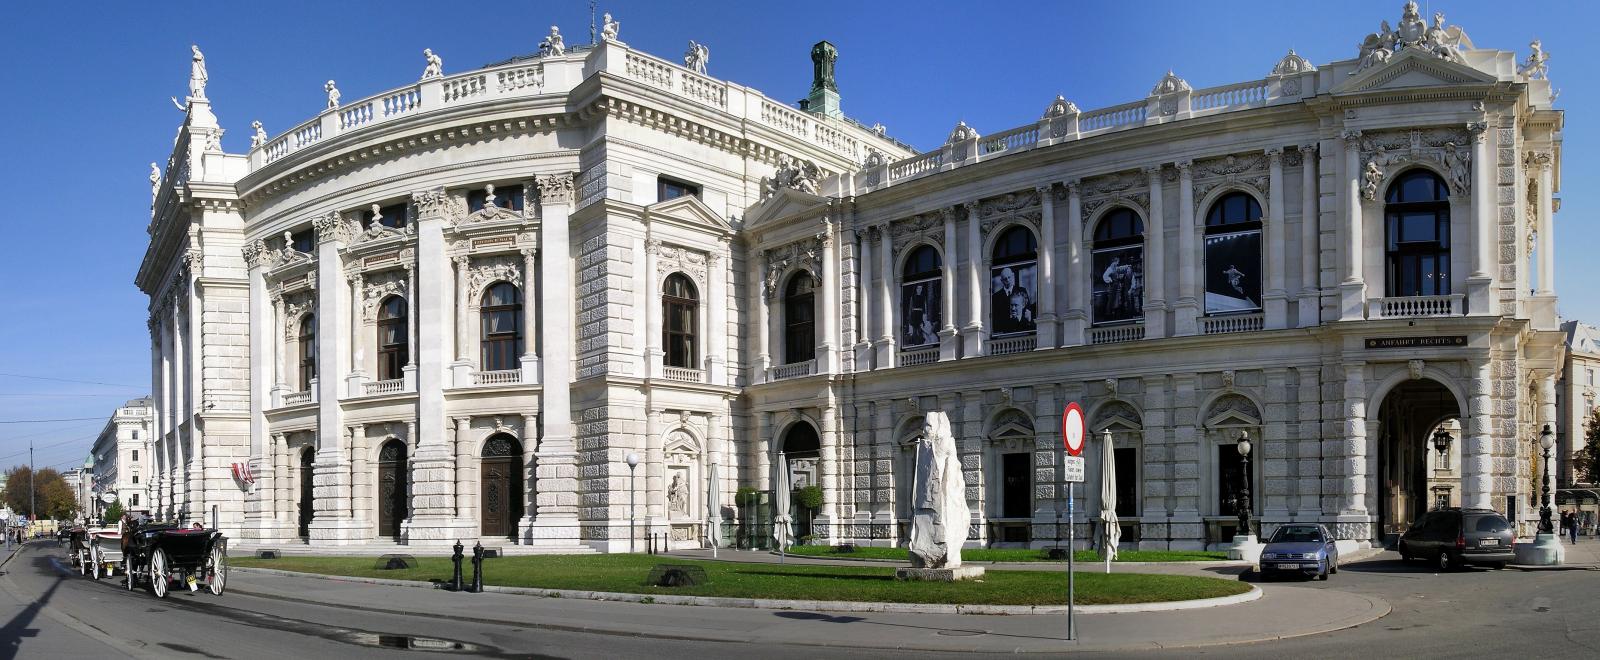 Lichtstellanlage Burgtheater Wien